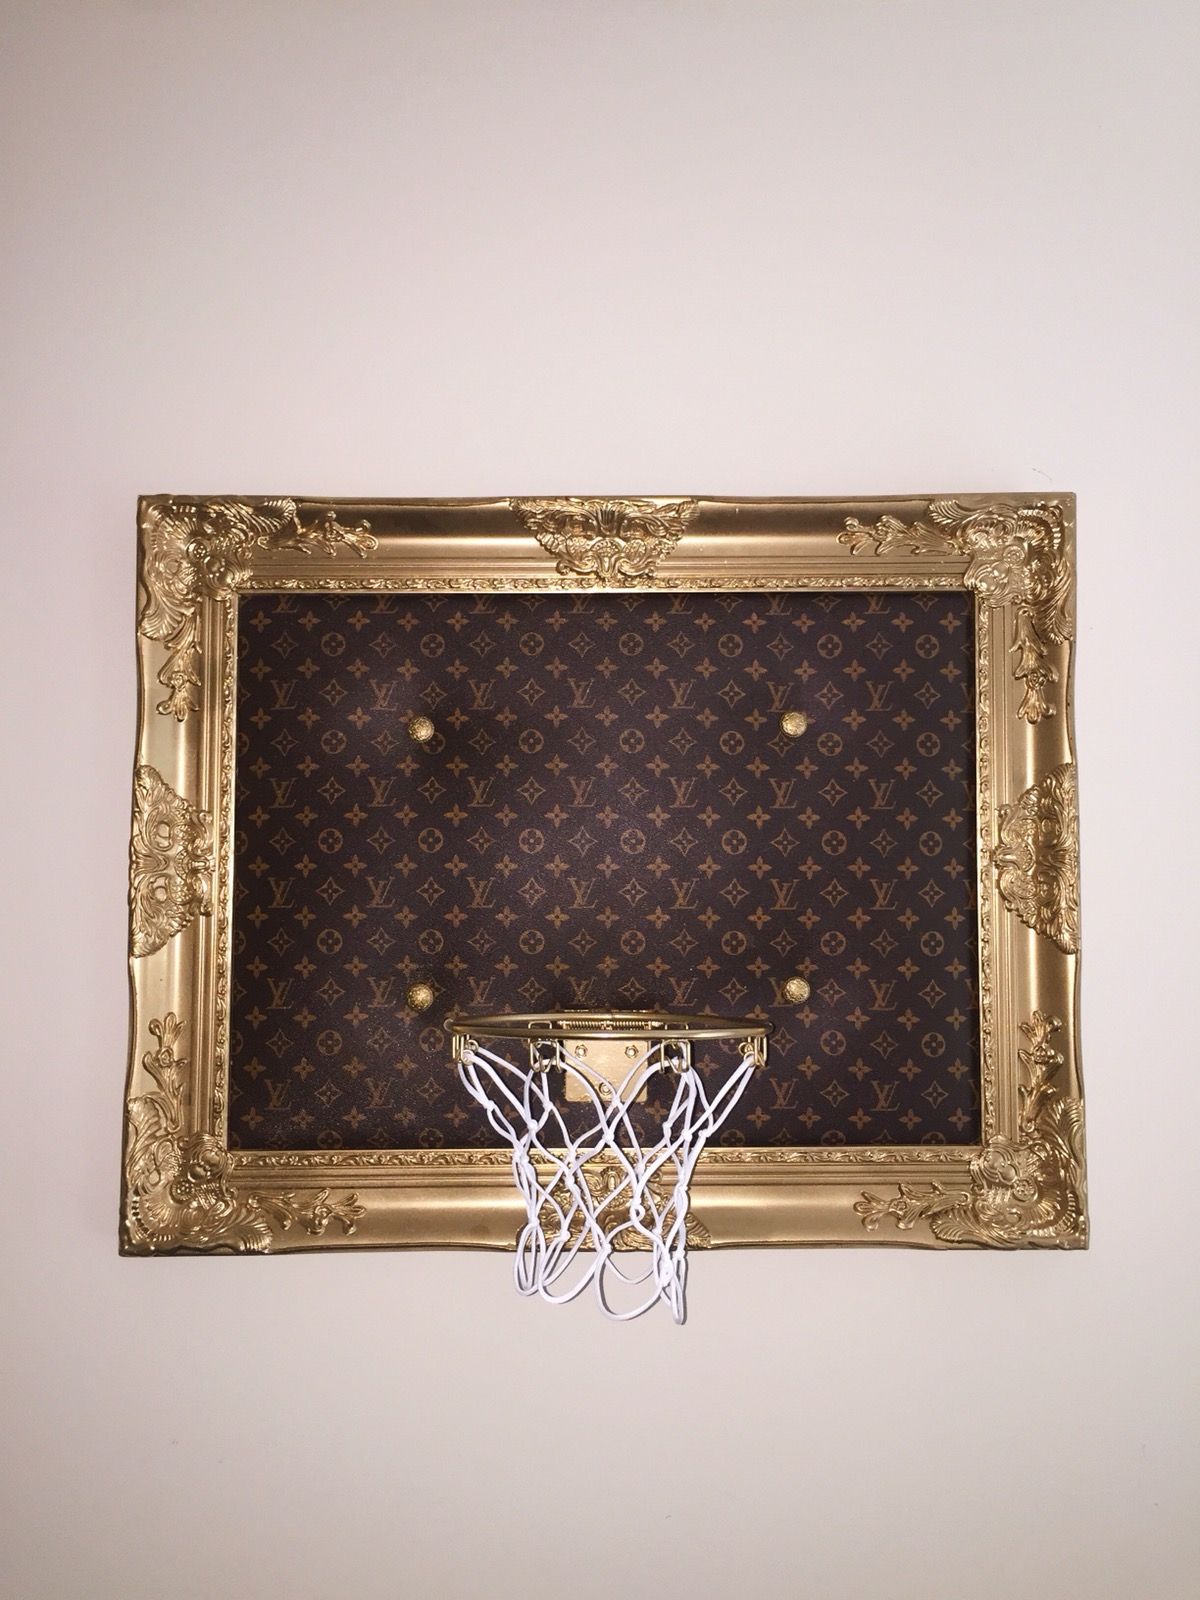 vuitton framed basketball